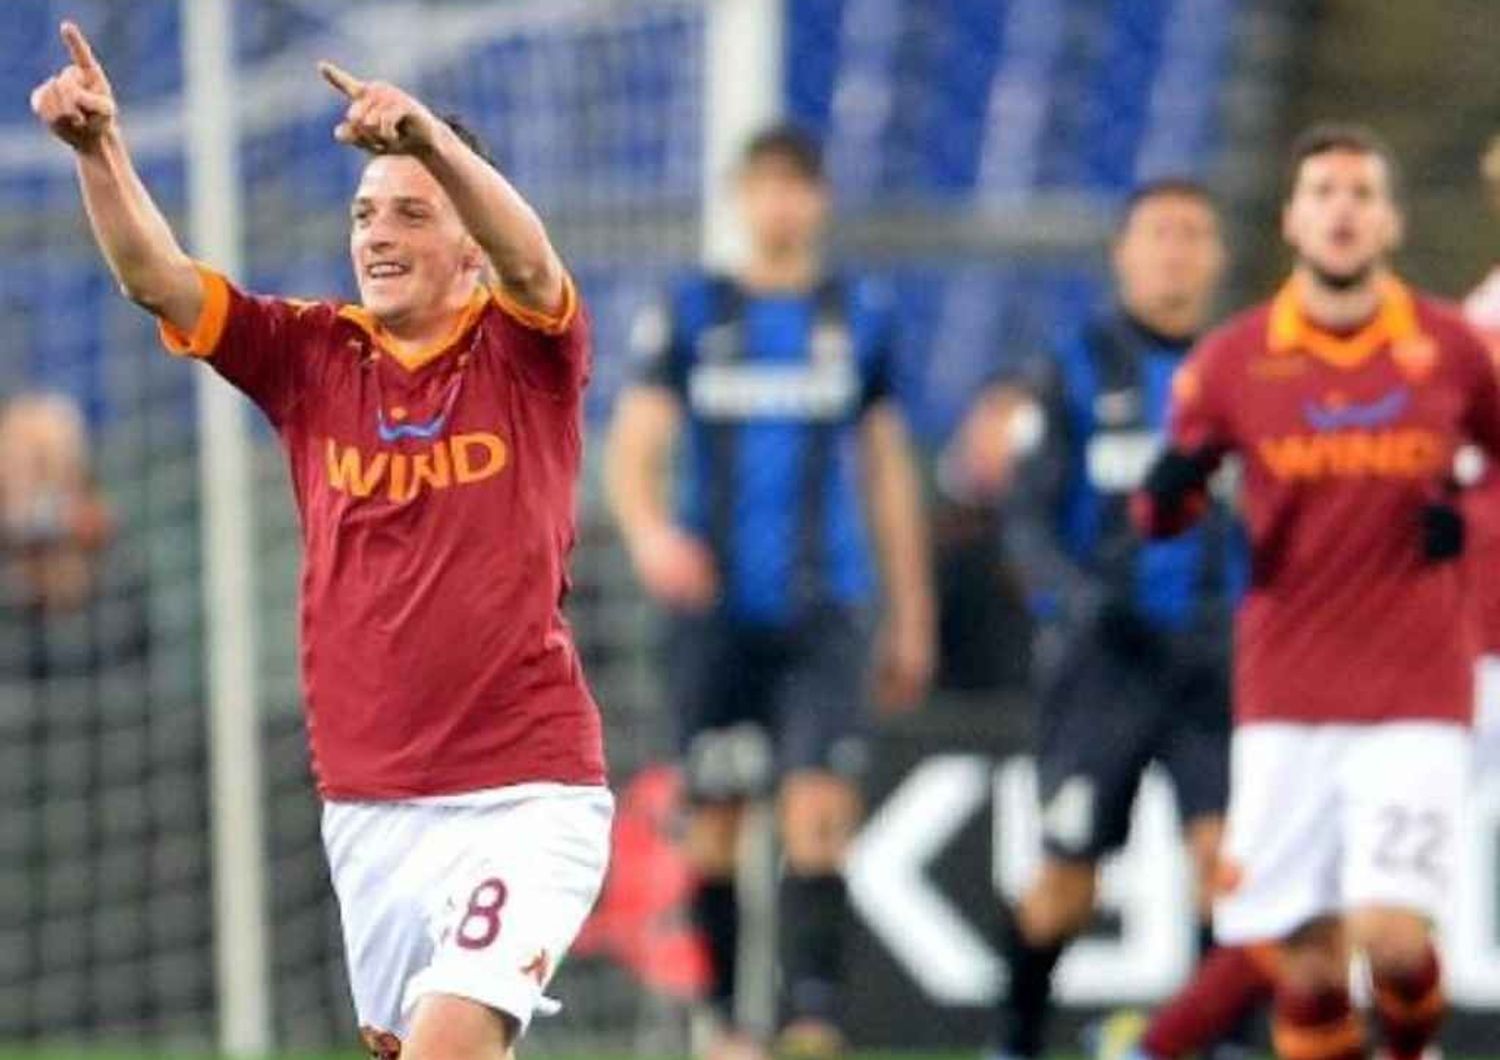 Calcio: Roma, col Verona attacco Gervinho-Destro-Florenzi